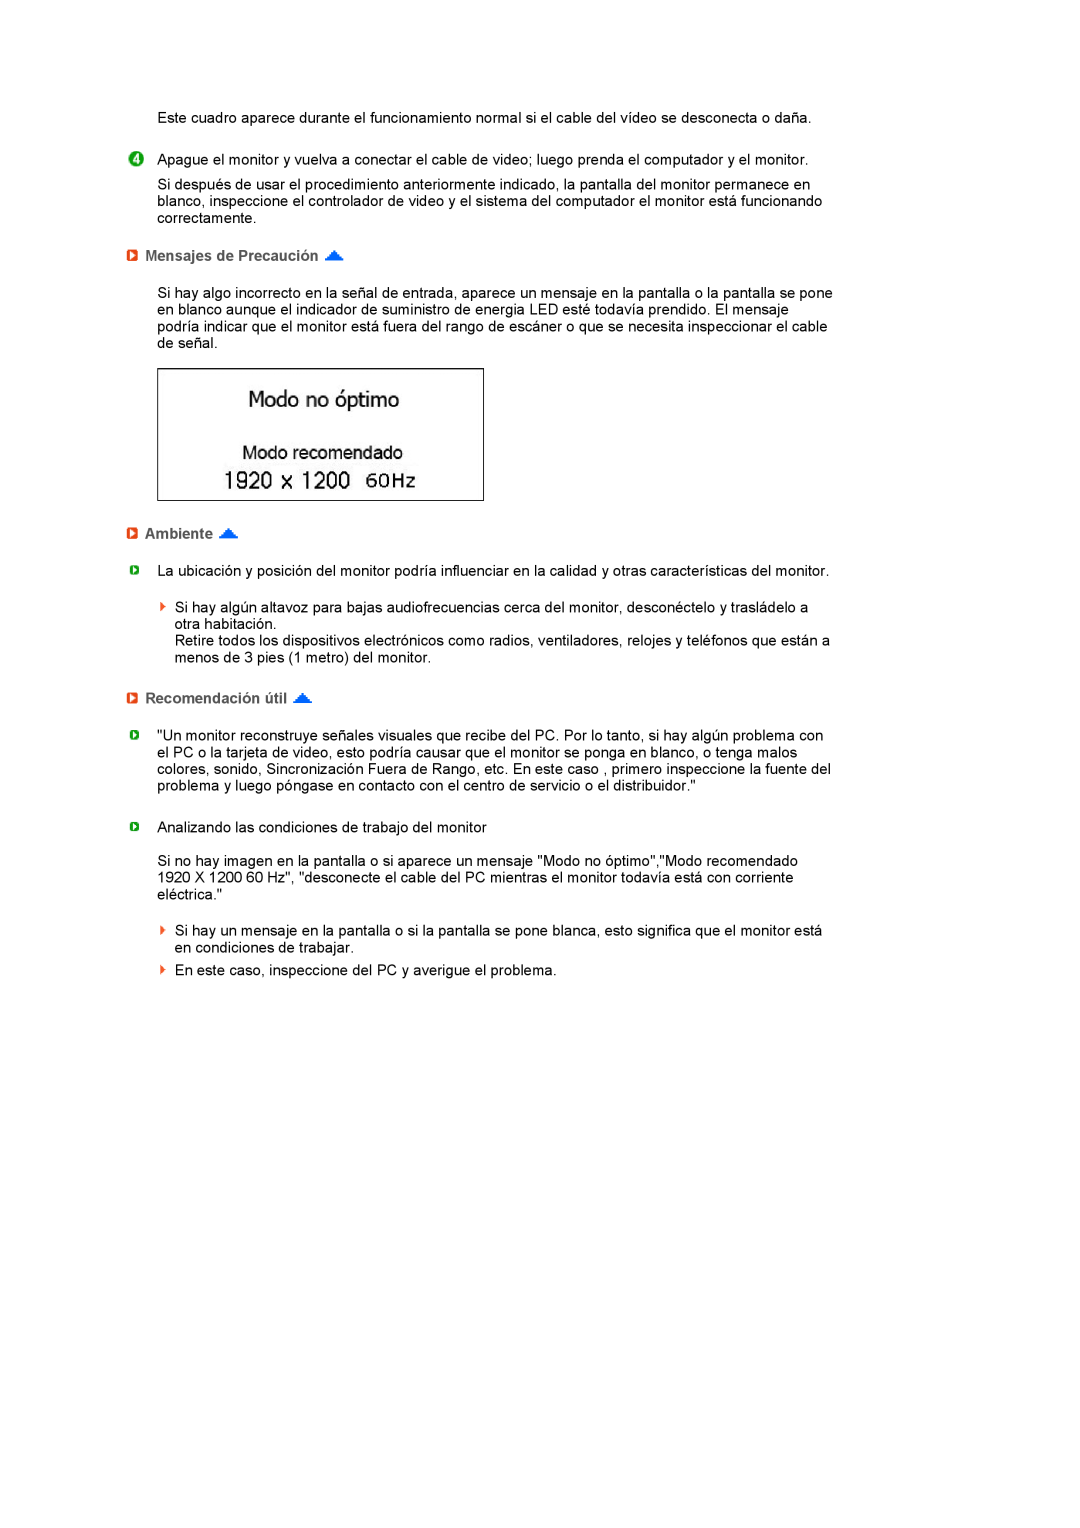 Samsung LS27HUBCBS/EDC, LS27HUBCB/EDC manual Mensajes de Precaución, Ambiente, Recomendación útil 